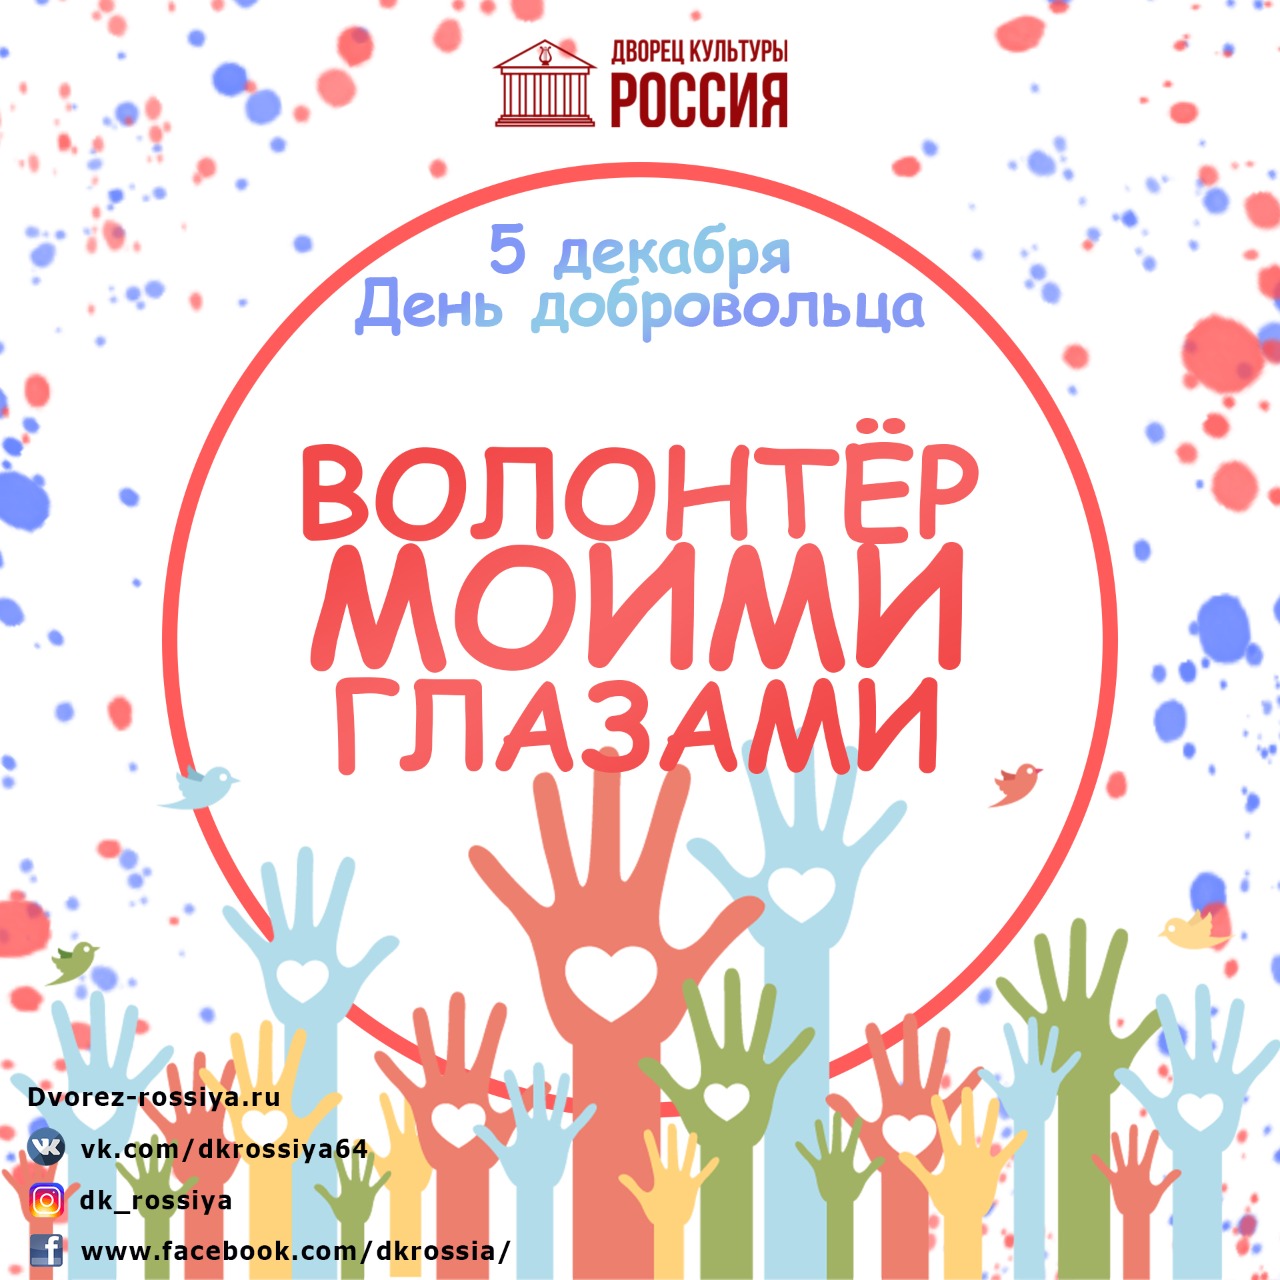 5 Декабря день волонтера в России